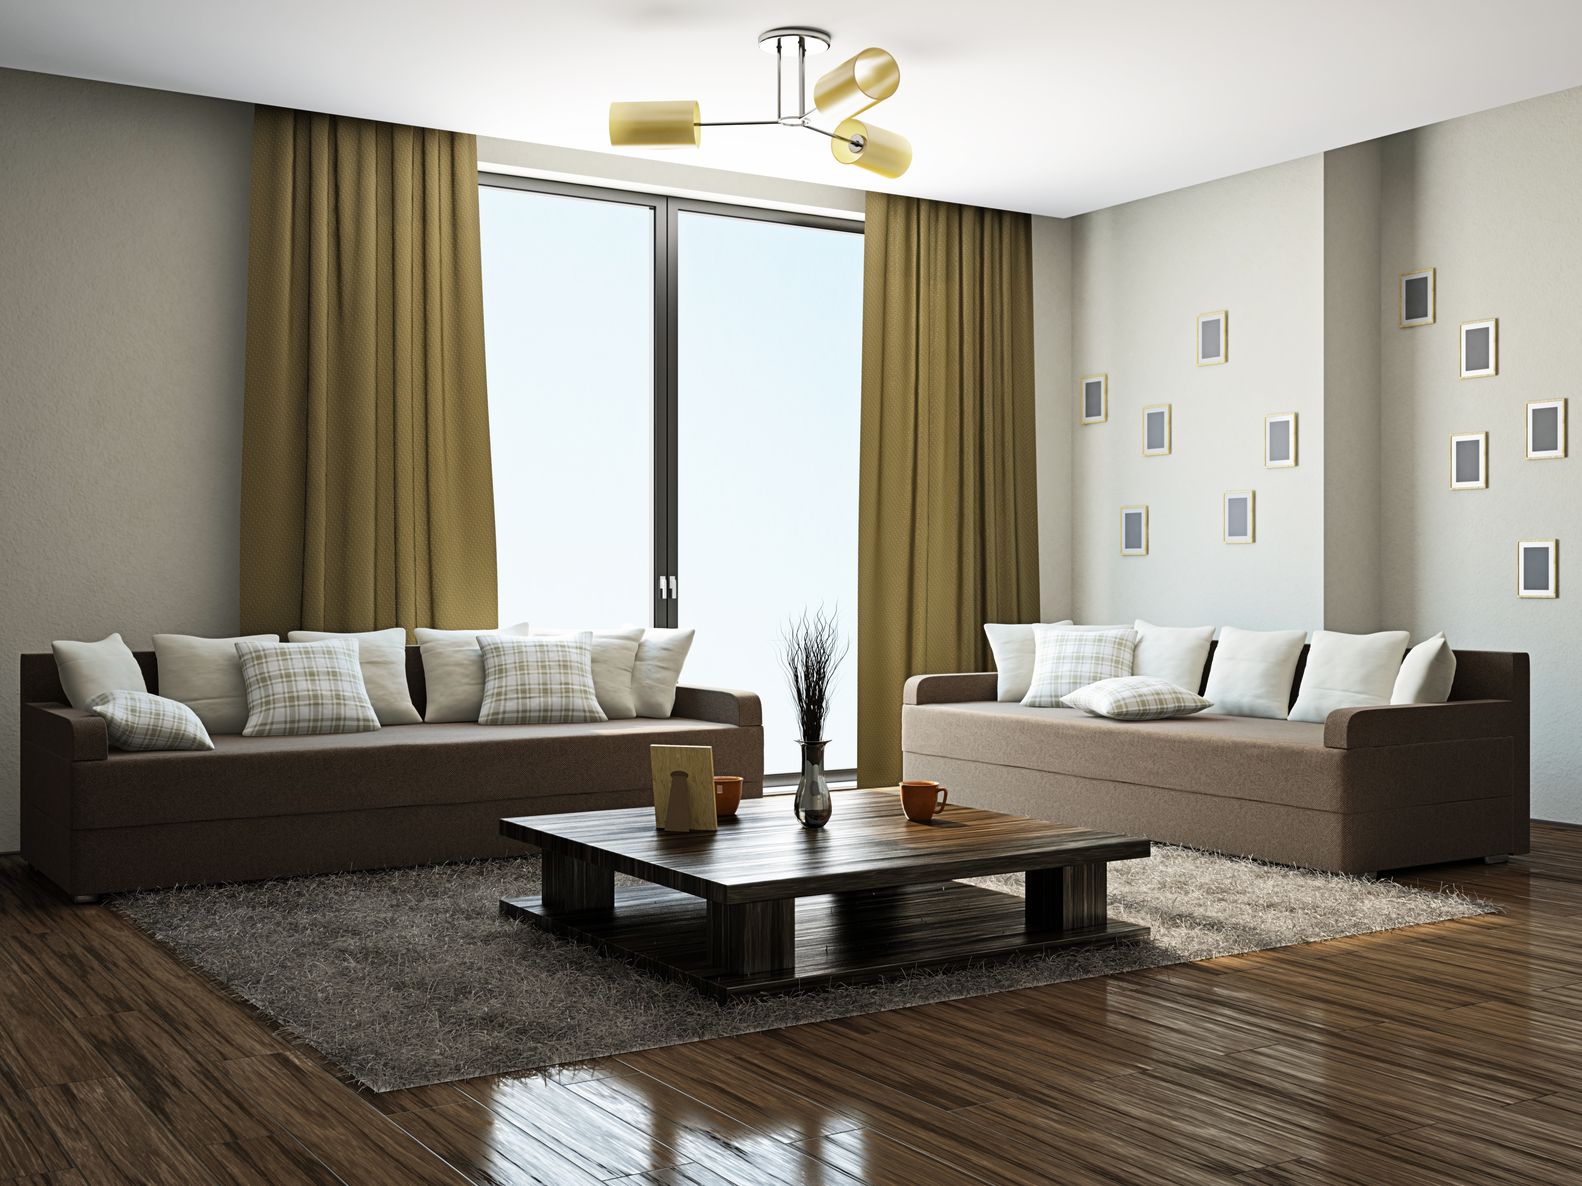 plus cool-brun-foncé-rideaux-salon-27-concernant-remodeler-design-d'intérieur-pour-maison-remodelage-avec-brun-foncé-rideaux-salon